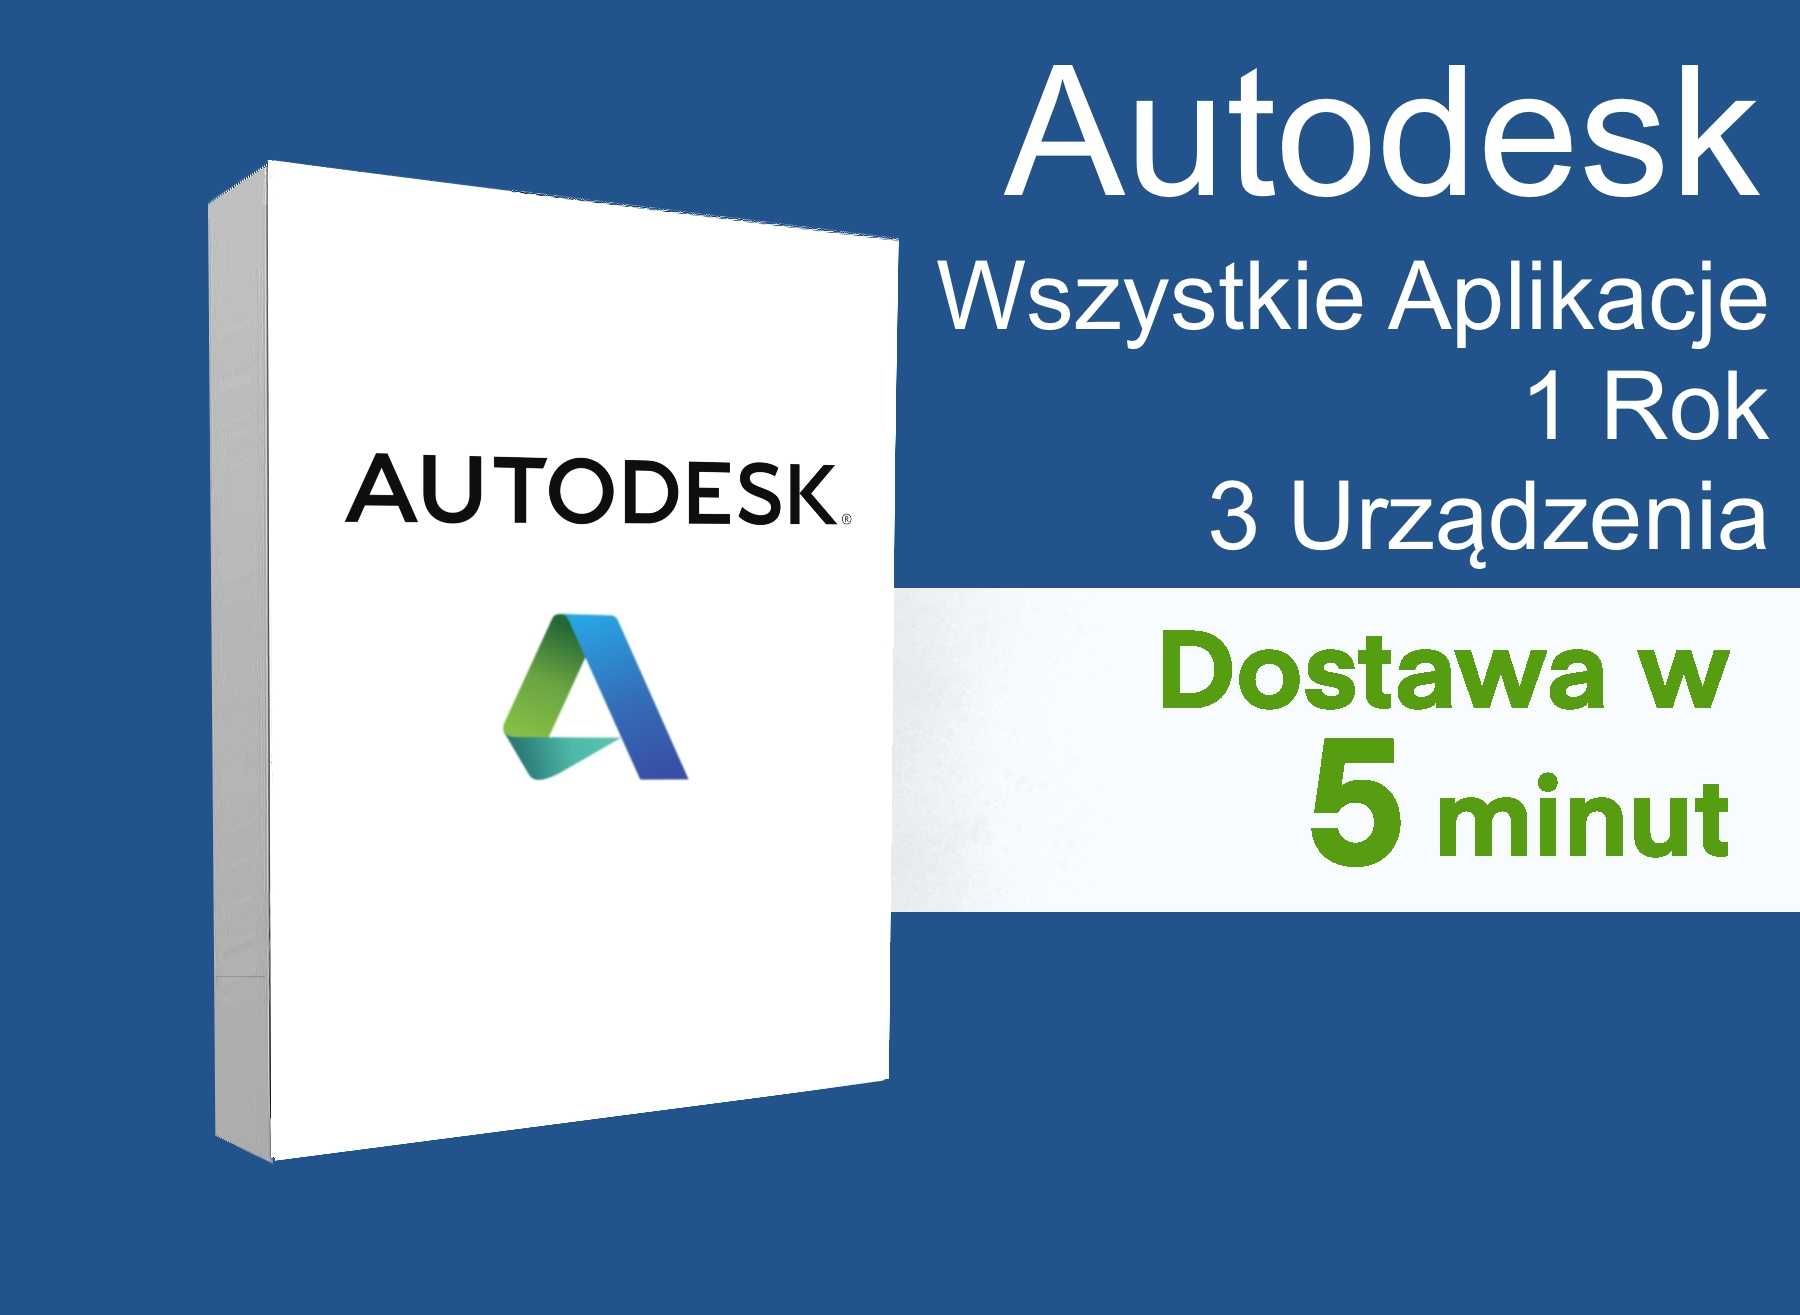 Autodesk Wszystkie Aplikacje [Autocad, Revit, Maya, Inventor, 3DS Max]